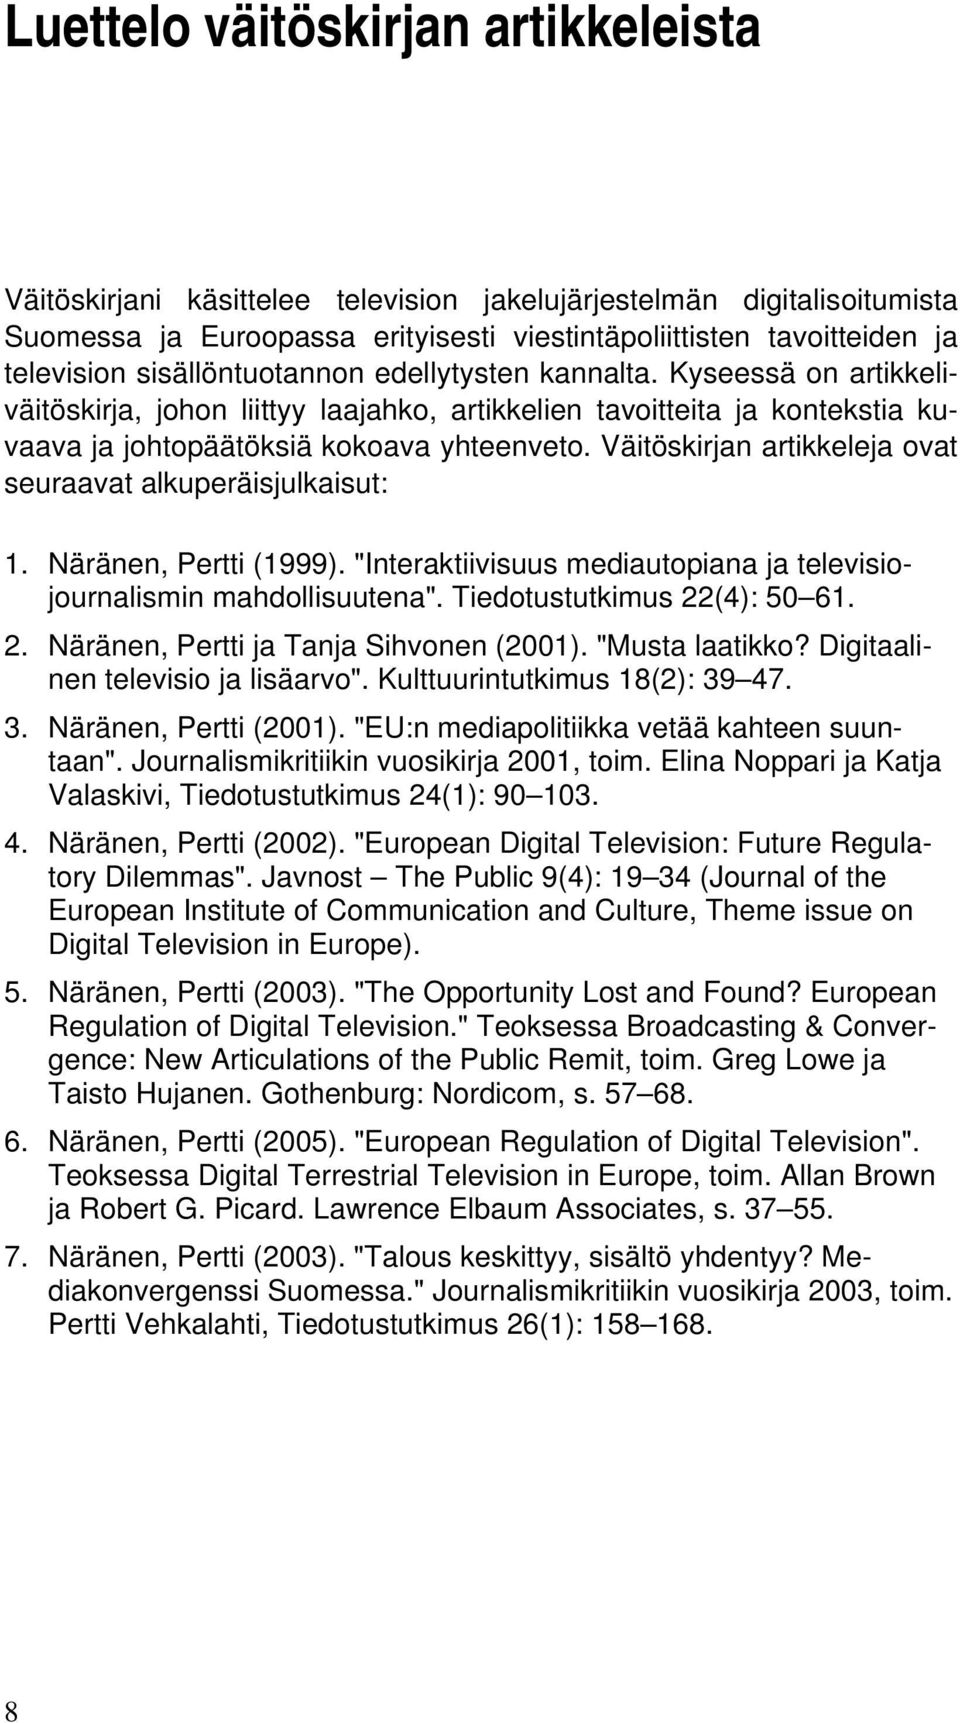 Väitöskirjan artikkeleja ovat seuraavat alkuperäisjulkaisut: 1. Näränen, Pertti (1999). "Interaktiivisuus mediautopiana ja televisiojournalismin mahdollisuutena". Tiedotustutkimus 22